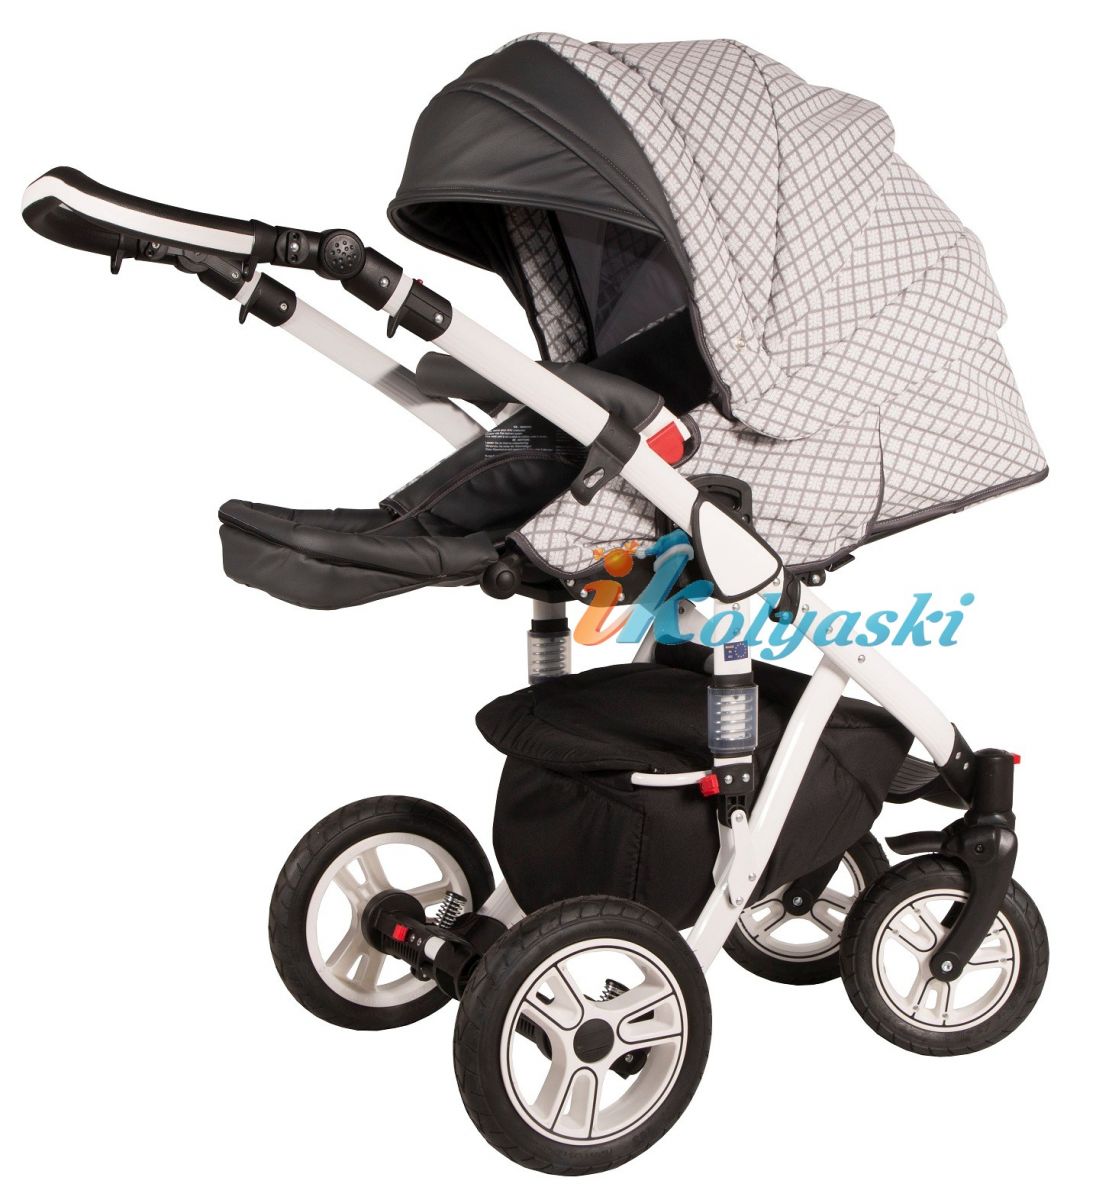 Kajtex Navy Plus Soft 2 в 1 экокожа и Basic Collection ткань, детская коляска для новорожденных, модульная на поворотных колесах, 2 в 1 Roan Bass Soft  - Роан Басс шасси Софт, обшивка люльки экокожа или ткань. Новинка 2018.